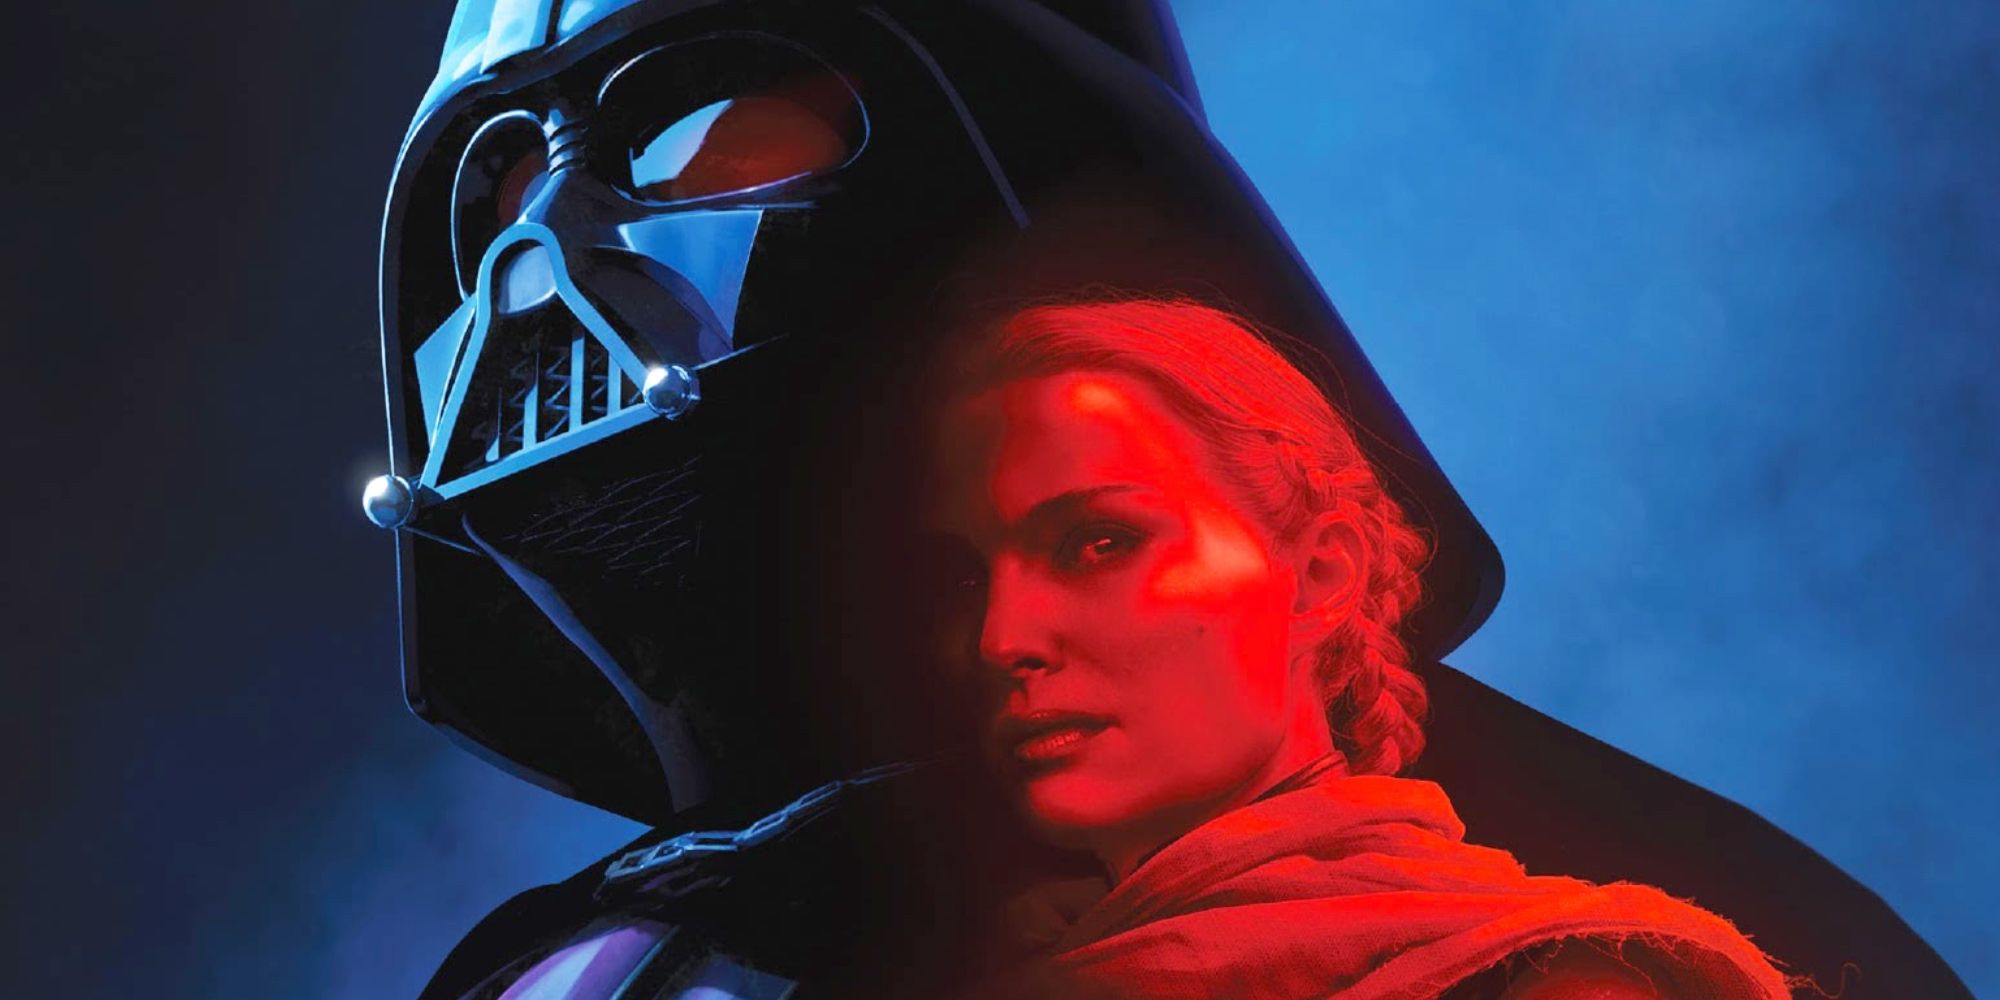 Darth Vader and Padmé Amidala in Star Wars Comic Cover